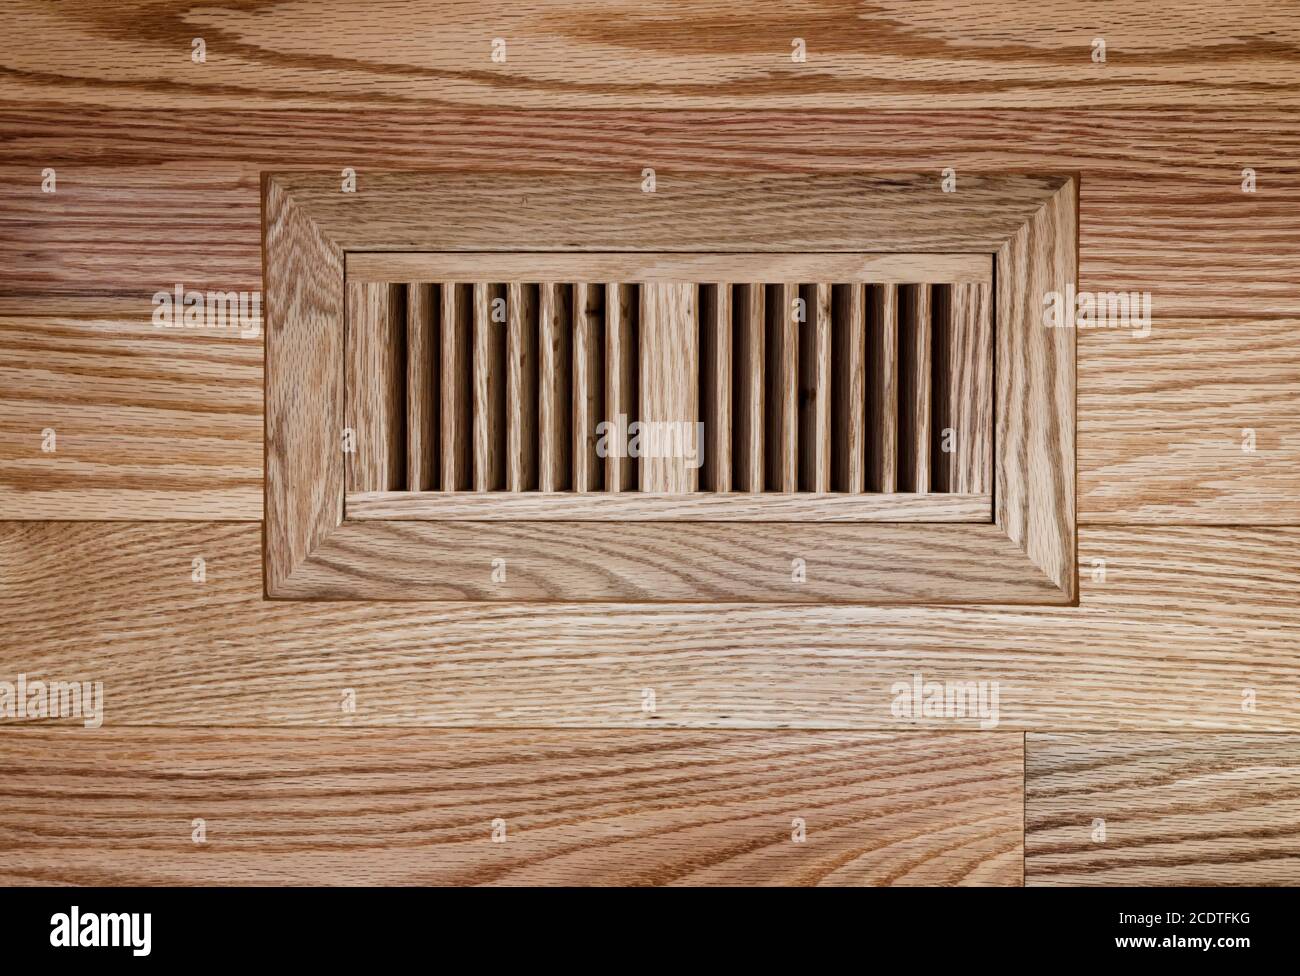 Wooden floor vent on red oak floor Stock Photo